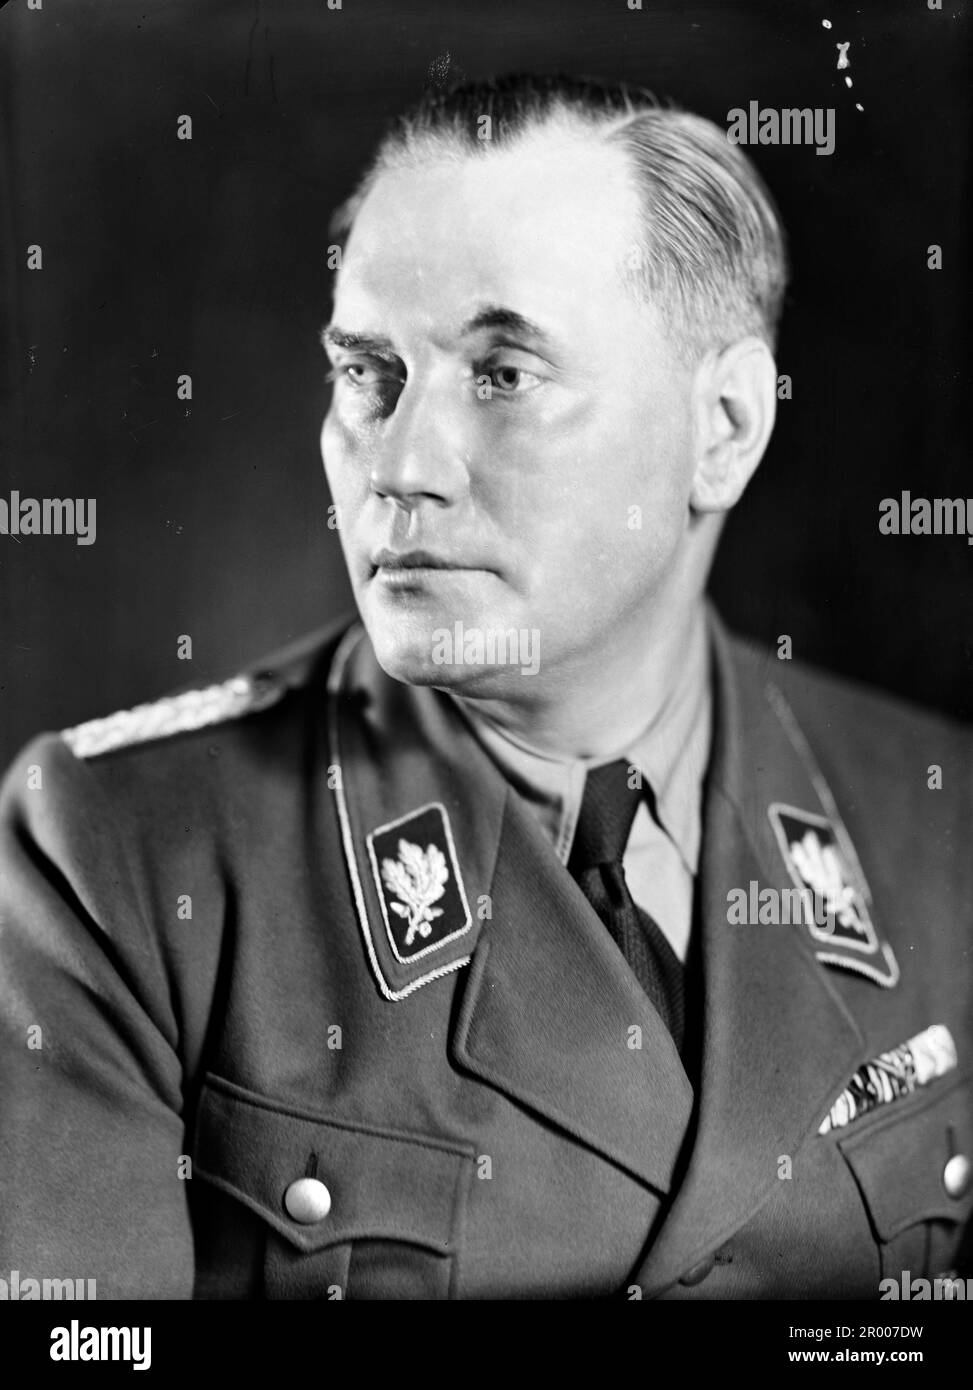 Wilhelm Brückner (Adolf Hitler, 11 dicembre 1884 1940 – 18 agosto 1954) è stato un . In seguito, Brückner si unì all'esercito, diventando un Oberst (colonnello) alla fine della seconda guerra mondiale Alla fine del 1922 entrò a far parte del Partito nazista . Il 9 novembre 1923 Brückner ha partecipato alla birreria Putsch di Monaco e si è reso colpevole di aver dato un contributo e di aver reso possibile l'alto tradimento. Il 20 febbraio 1934, Brückner fu nominato Capo Adjutante di Hitler e mantenne tale ruolo fino al licenziamento il 18 ottobre 1940. Qui indossa la sua uniforme SA (Sturmabteilung) nel 1933-1934; Foto Stock